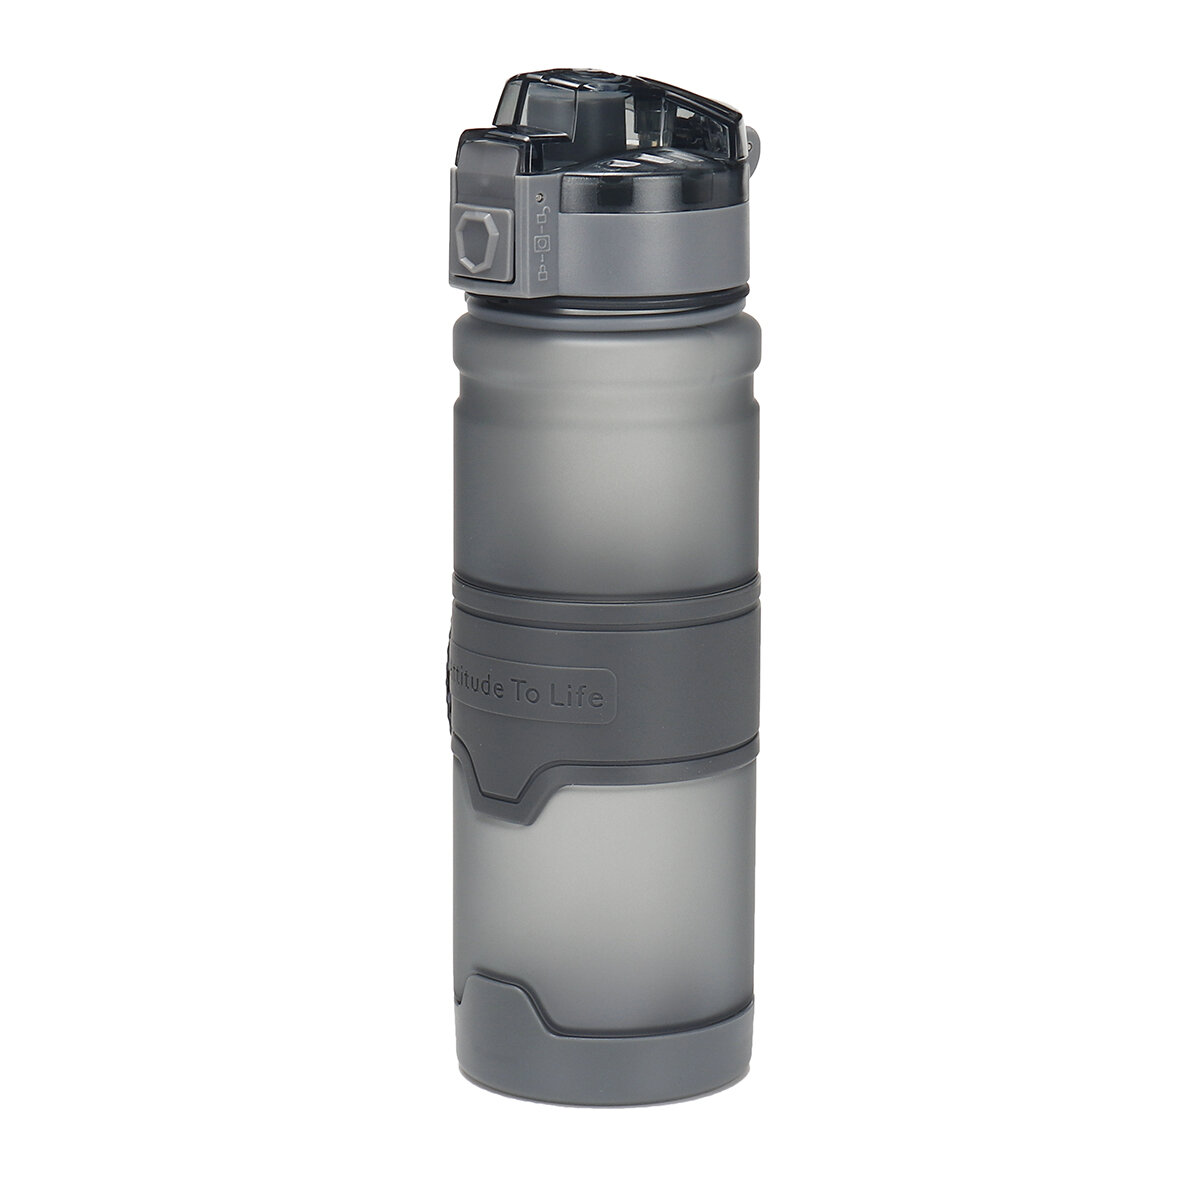 500/1000 ml-es vízpalackok BPA-mentes szivárgásmentes műanyagból ugráló fedéllel a szabadtéri sportokhoz, kempingezéshez és utazáshoz.